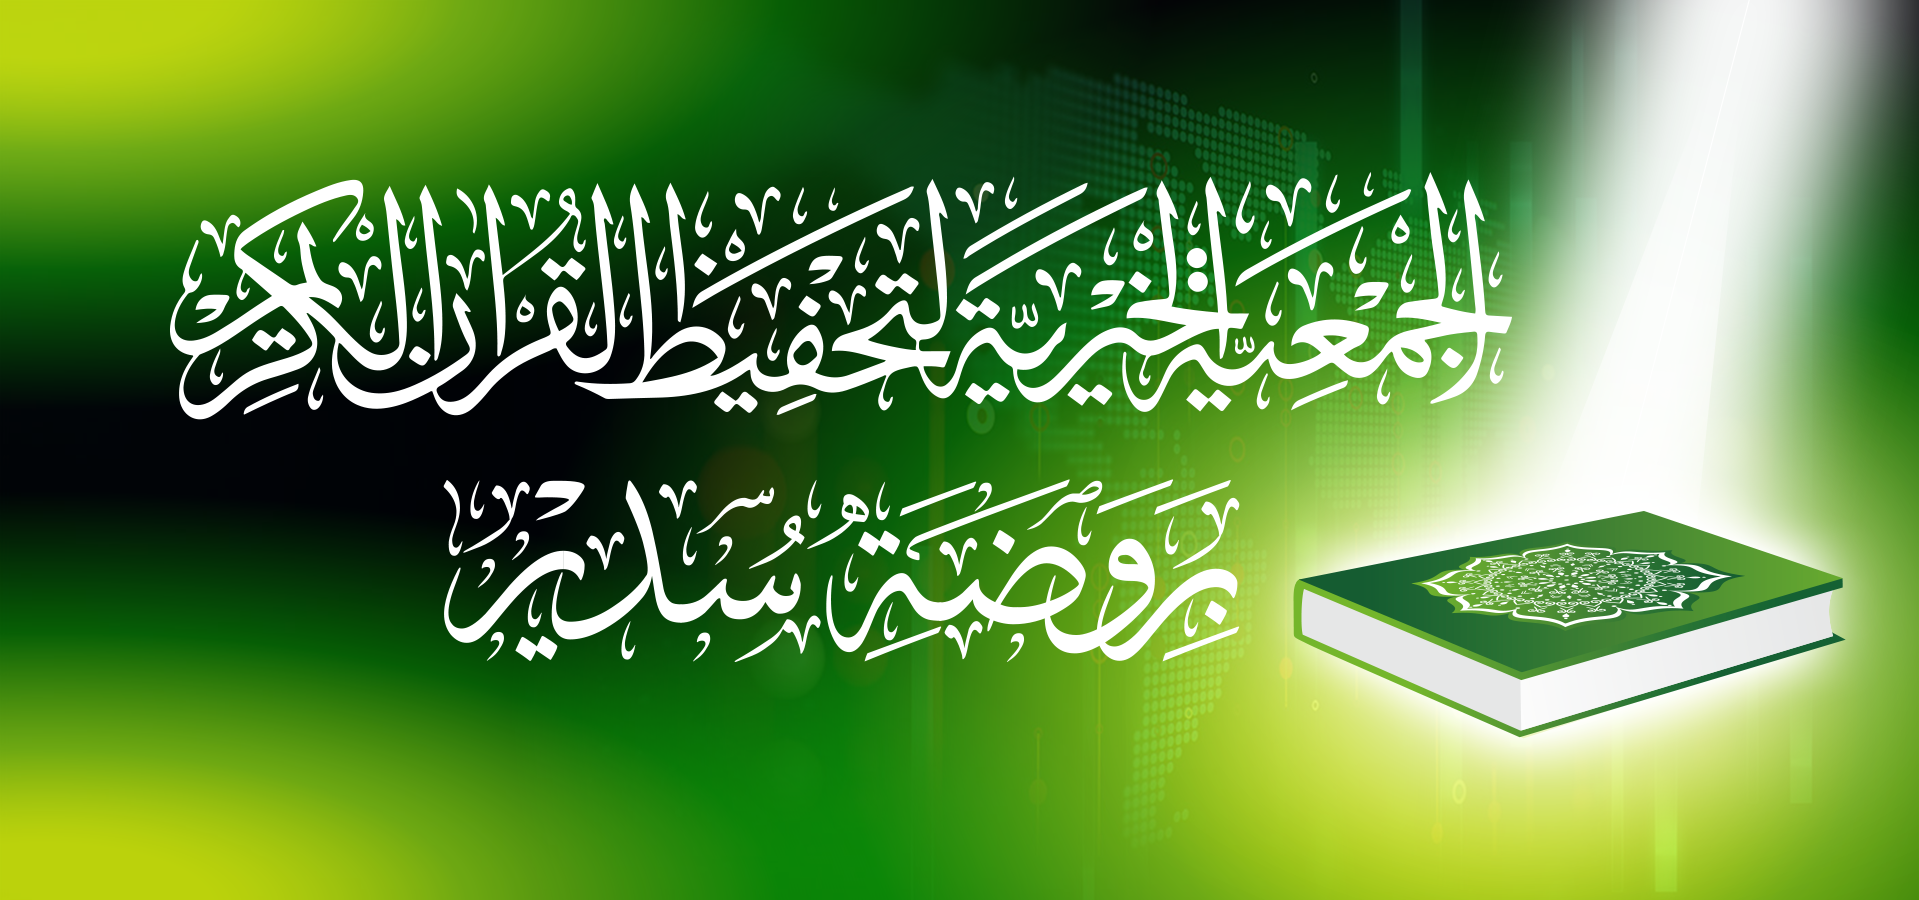 الجمعية الخيرية لتحفيظ القرآن الكريم بروضة سدير